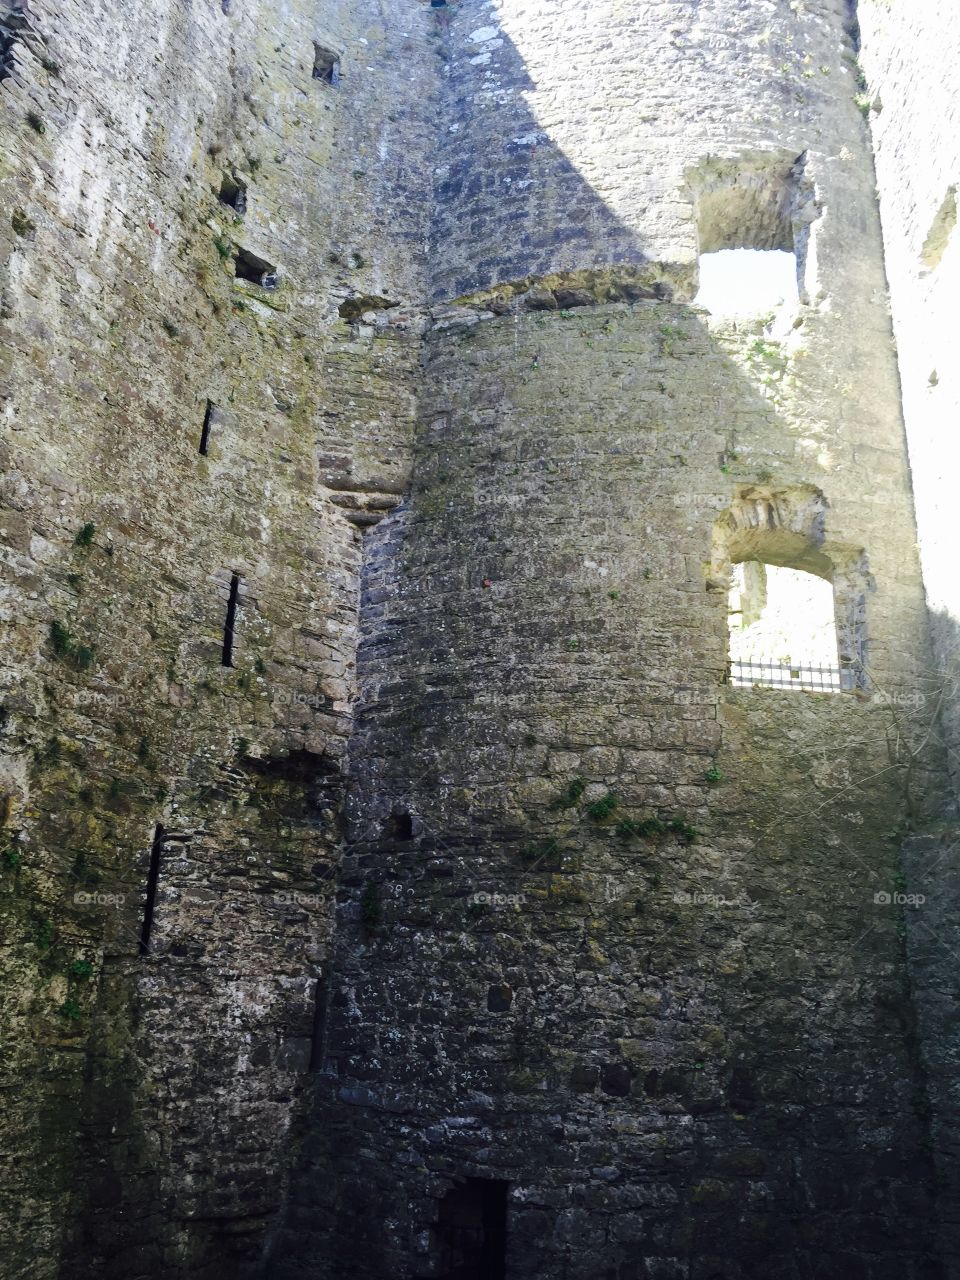 Welsh Castle 